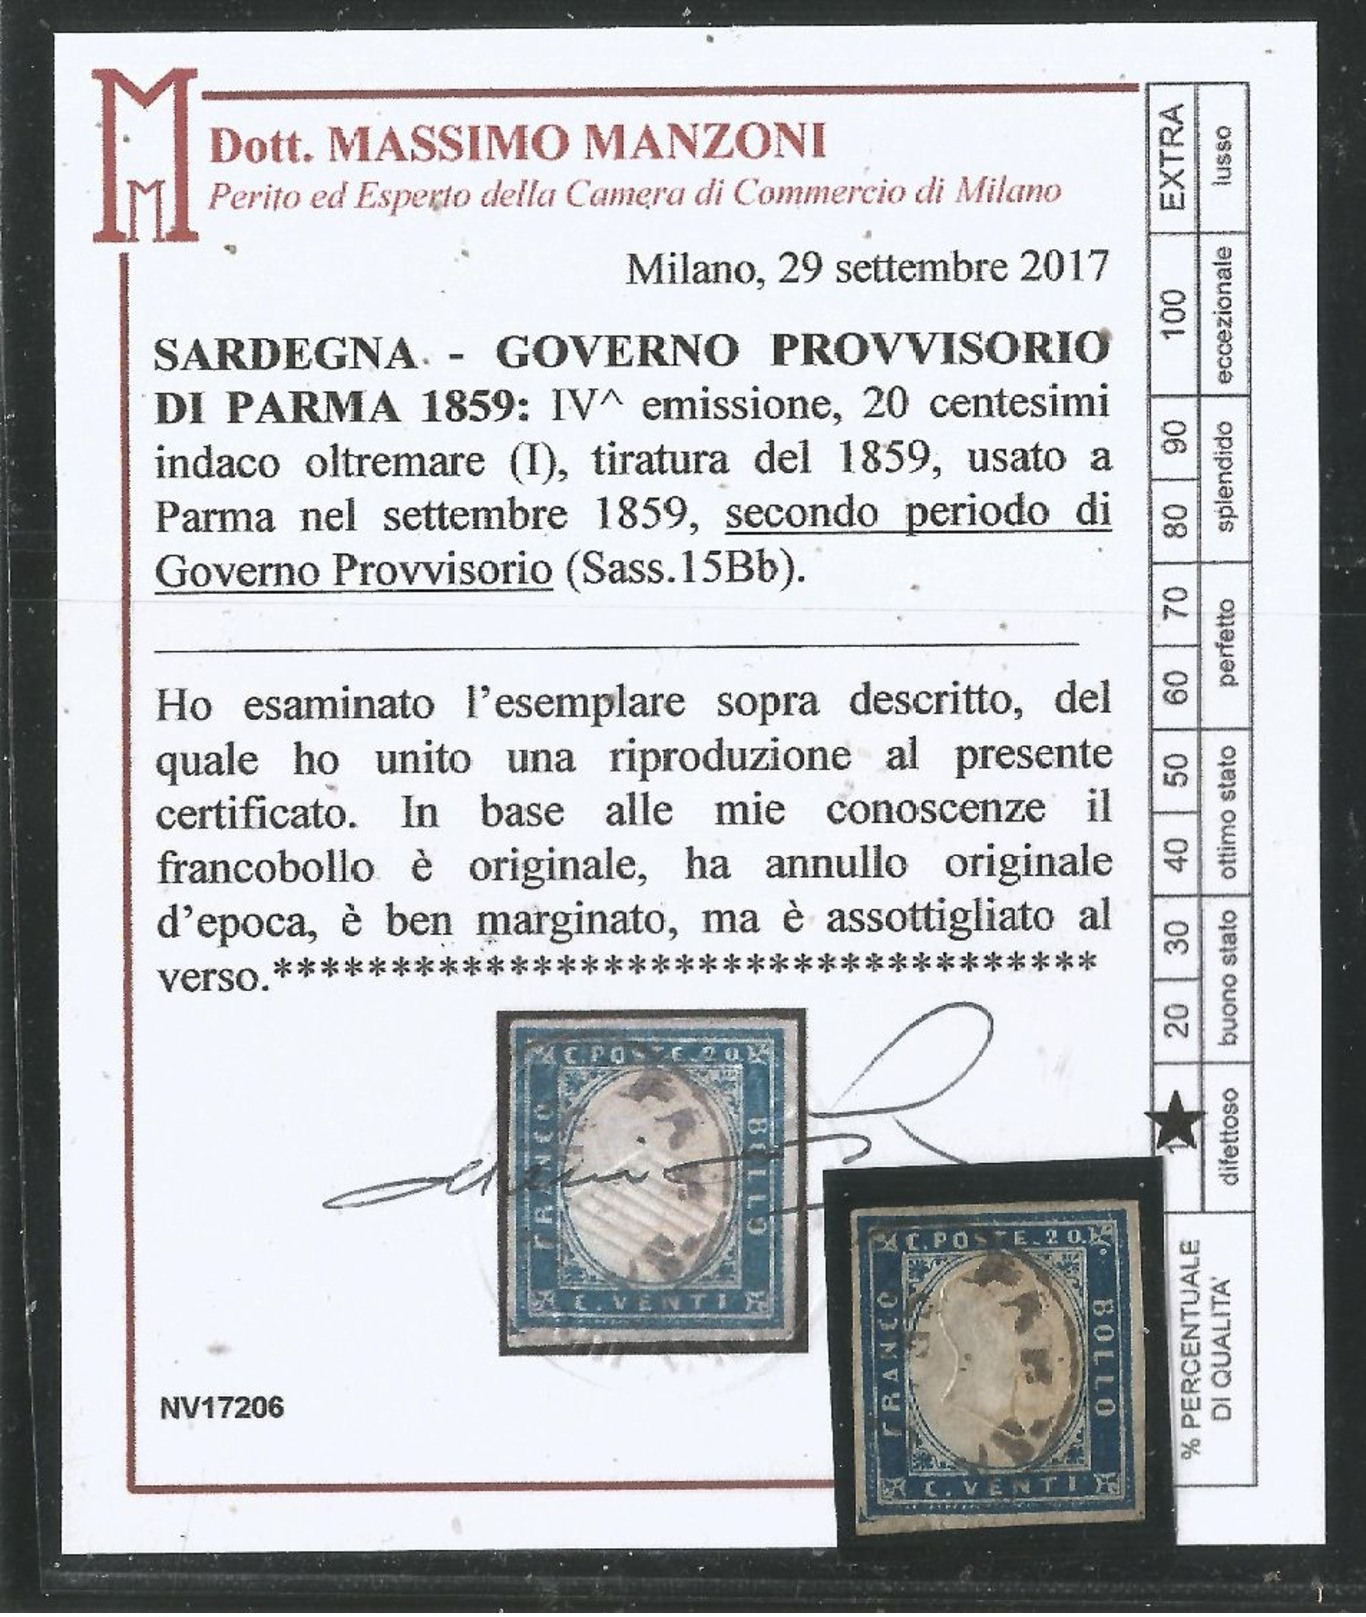 1859 : 20 Cent Indacoltremare (I) Ann. PARMA Gov.Provv. Att. Manzoni (€ 120+) - Sardegna